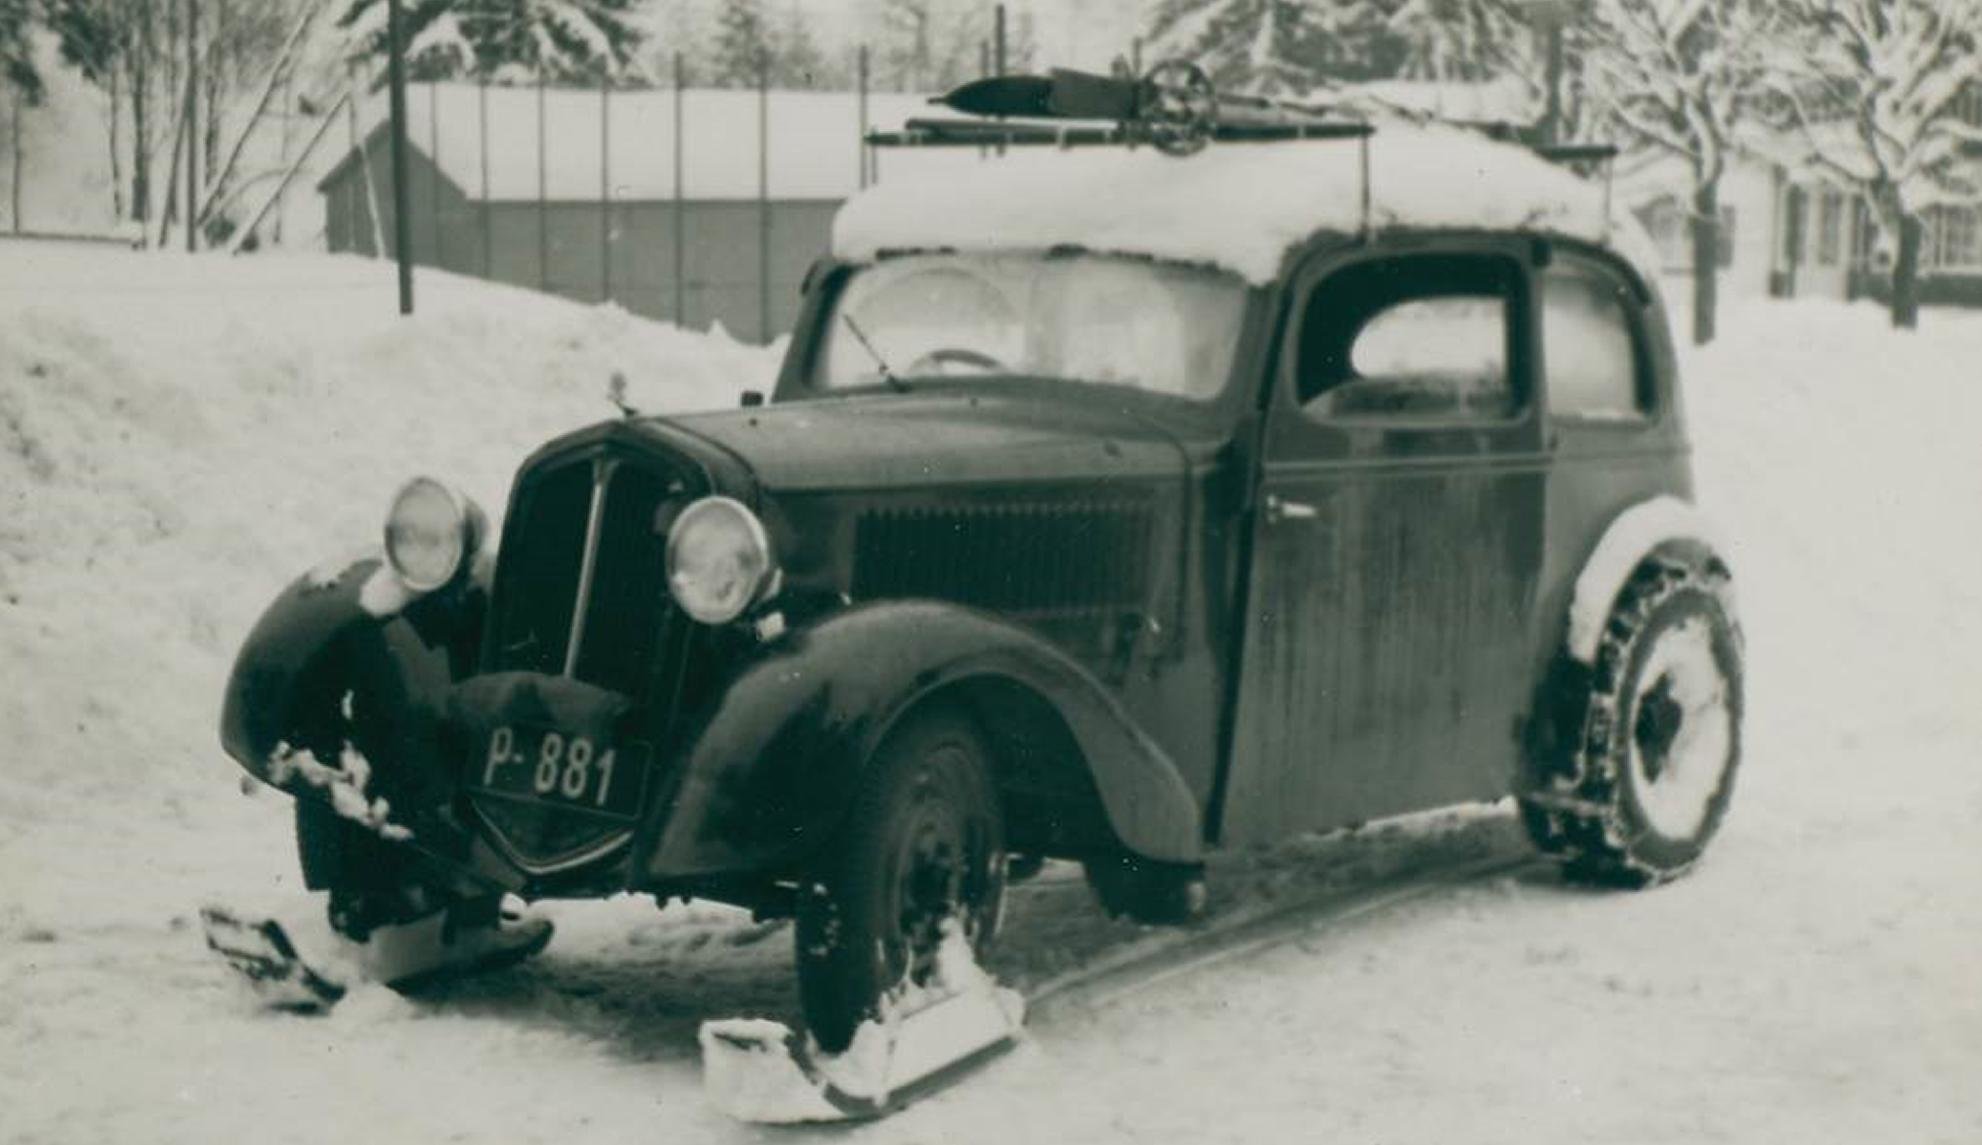 V únoru 1935 Škoda testovala Popular s lyžemi na přední nápravě.